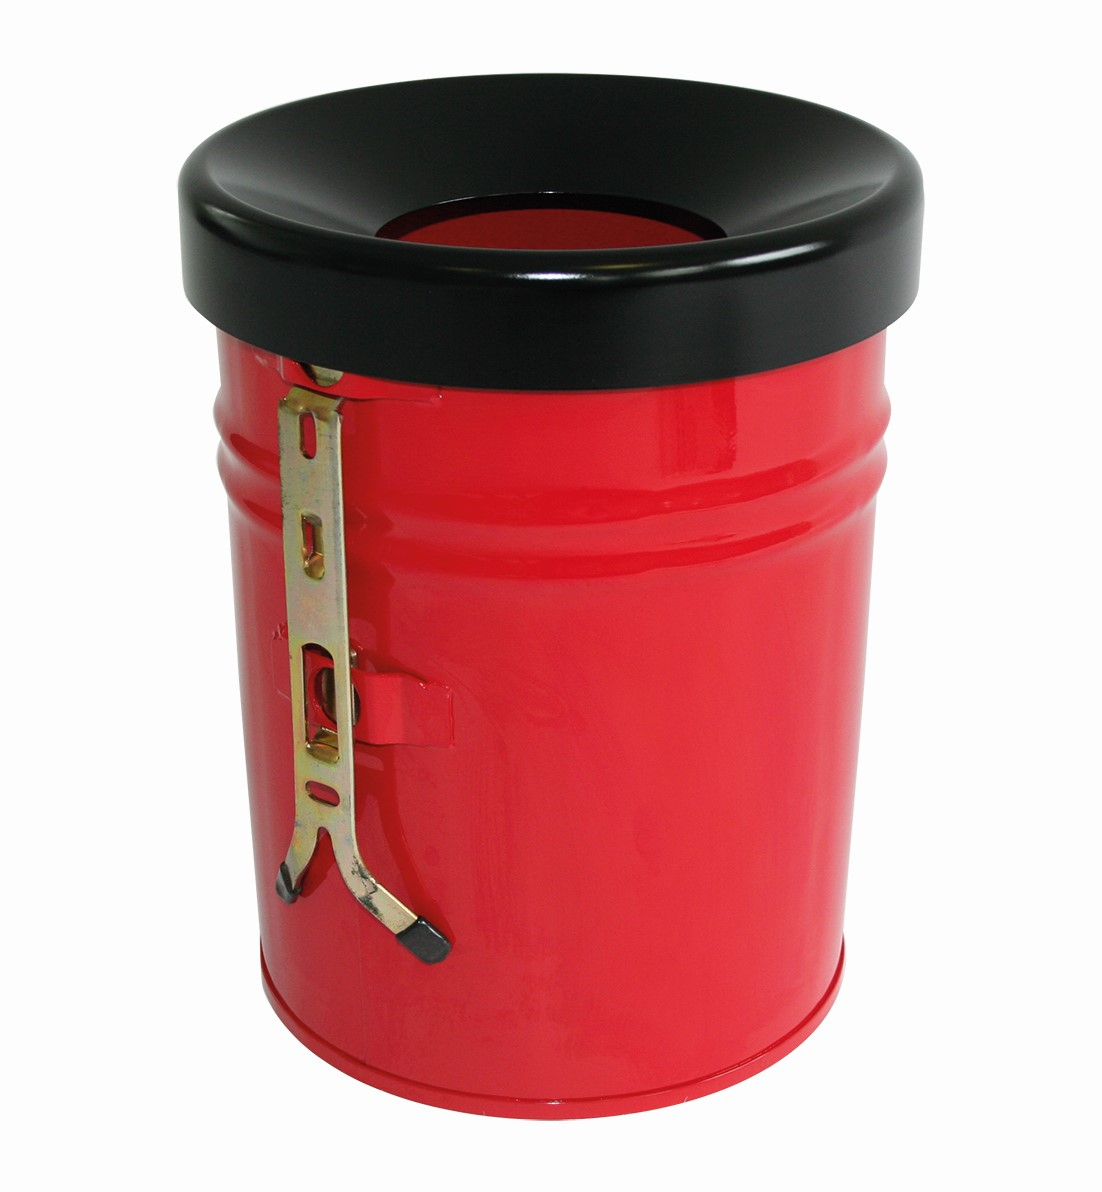 Selbstlöschender Abfallbehälter FIRE EX zur Wandbefestigung, 16 l, rot, Kopfteil schwarz Standard 1 ZOOM